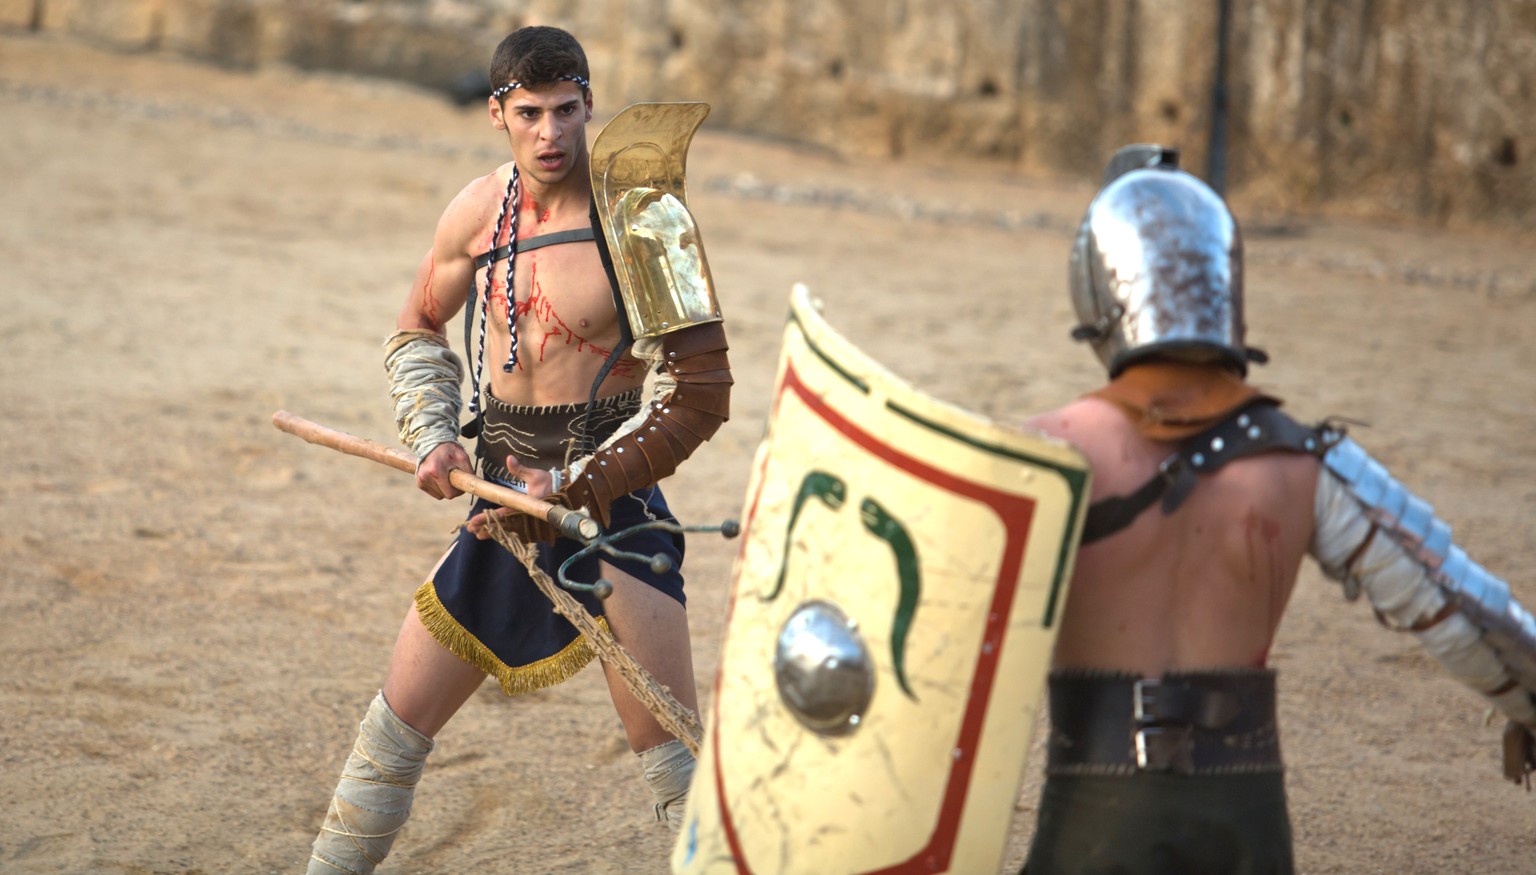 Reenactment eines Gladiatorenkampfs in Spanien.&nbsp;